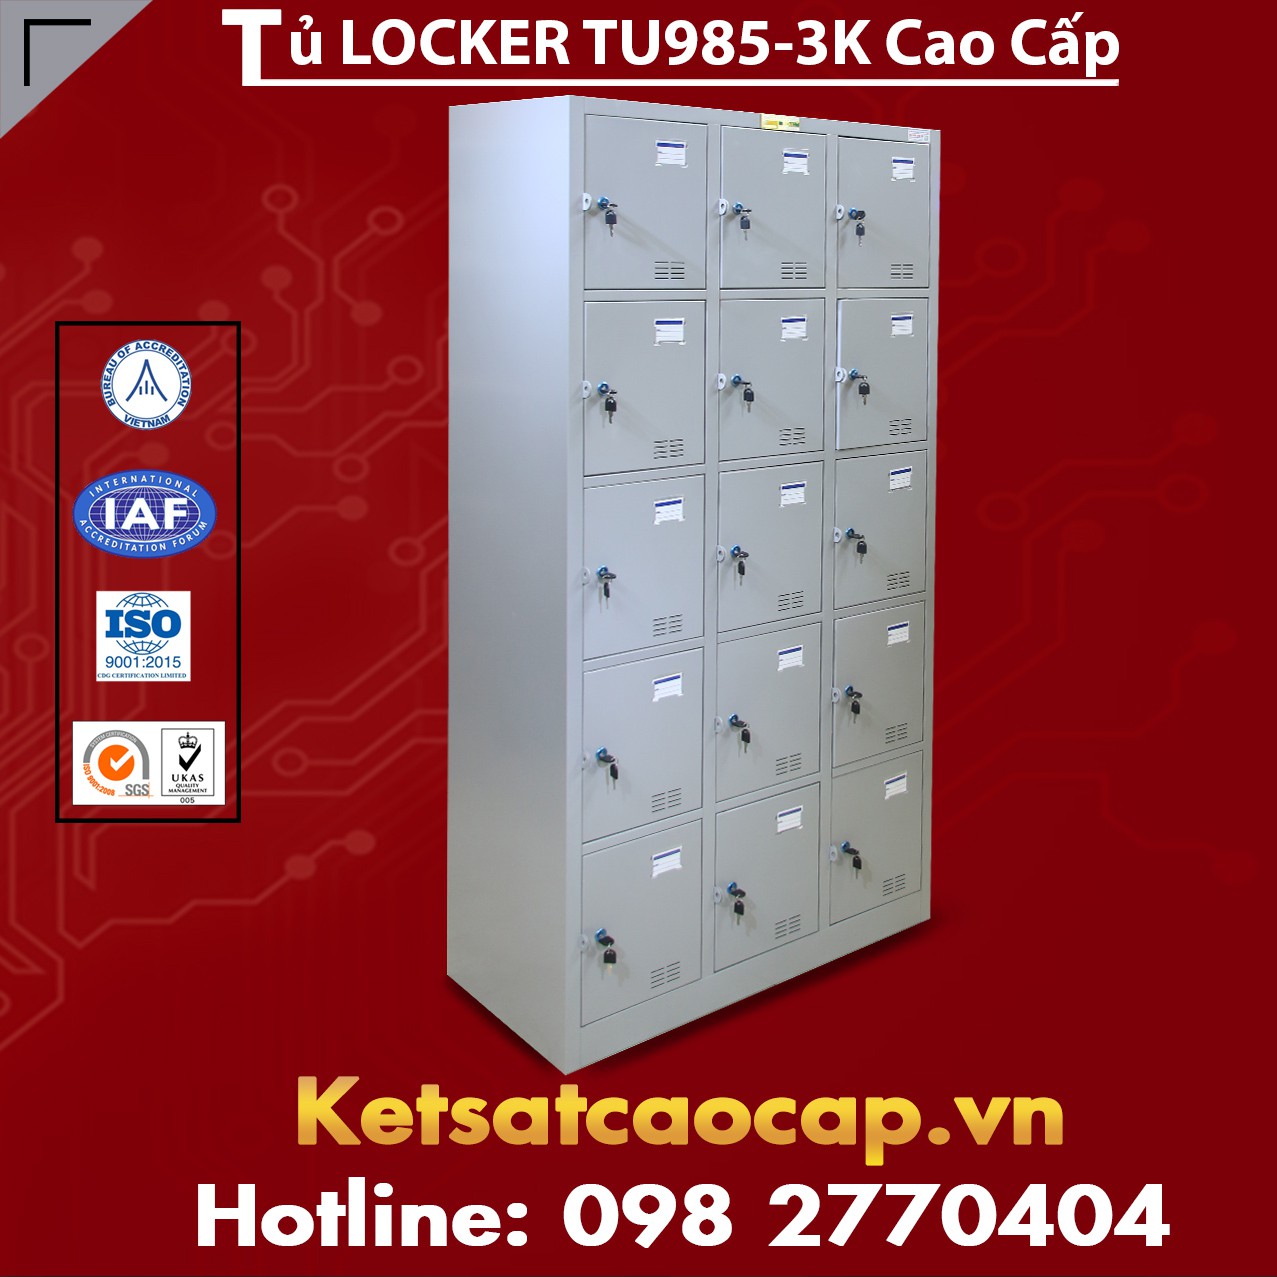 Tủ Locker TU985-3K